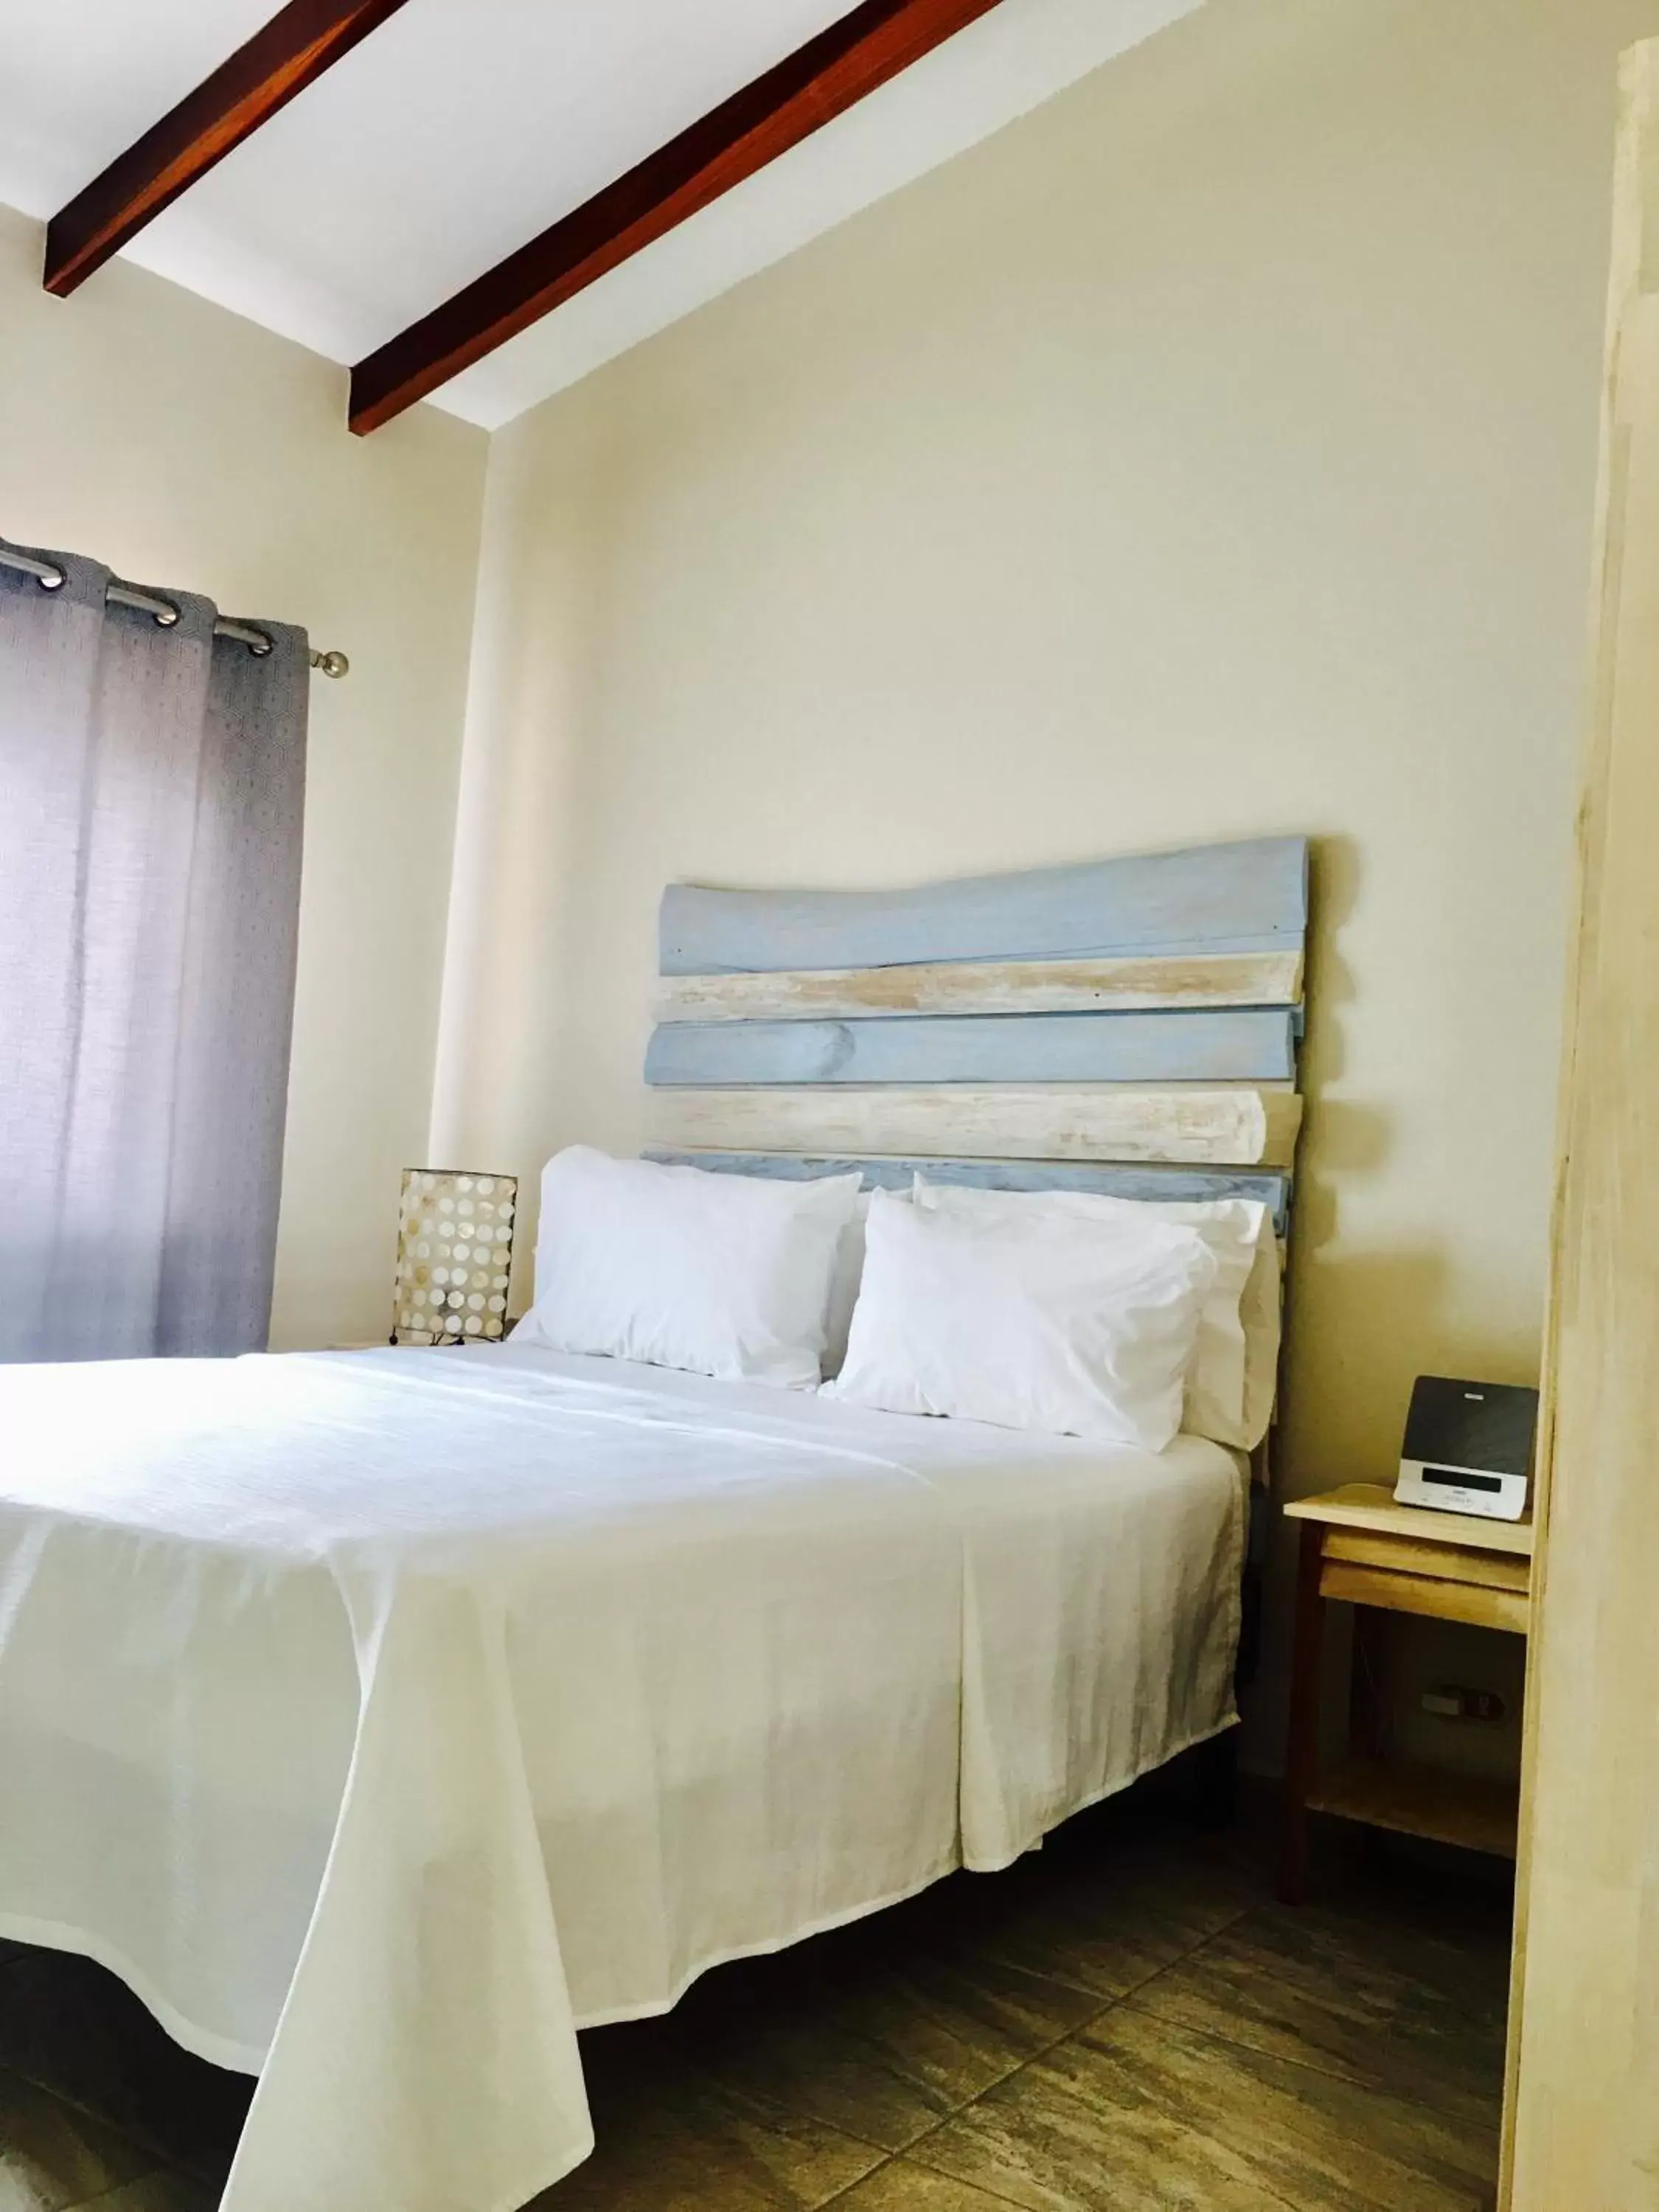 Deluxe Queen Room in Ten North Tamarindo Beach Hotel